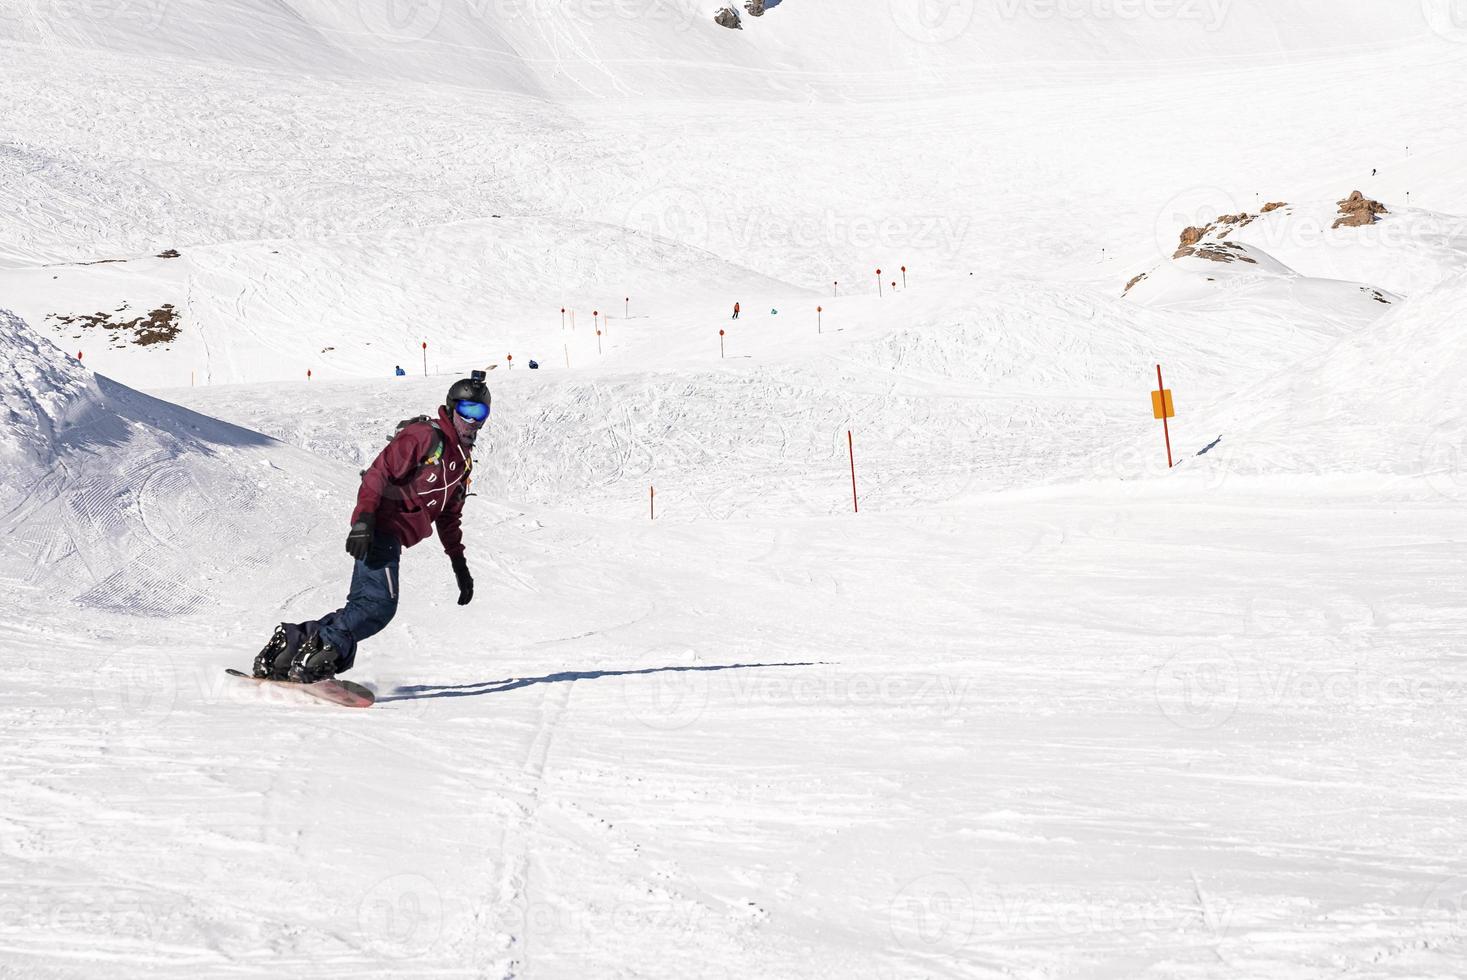 jovem snowboarder deslizando ladeira nevada na montanha no resort de inverno foto